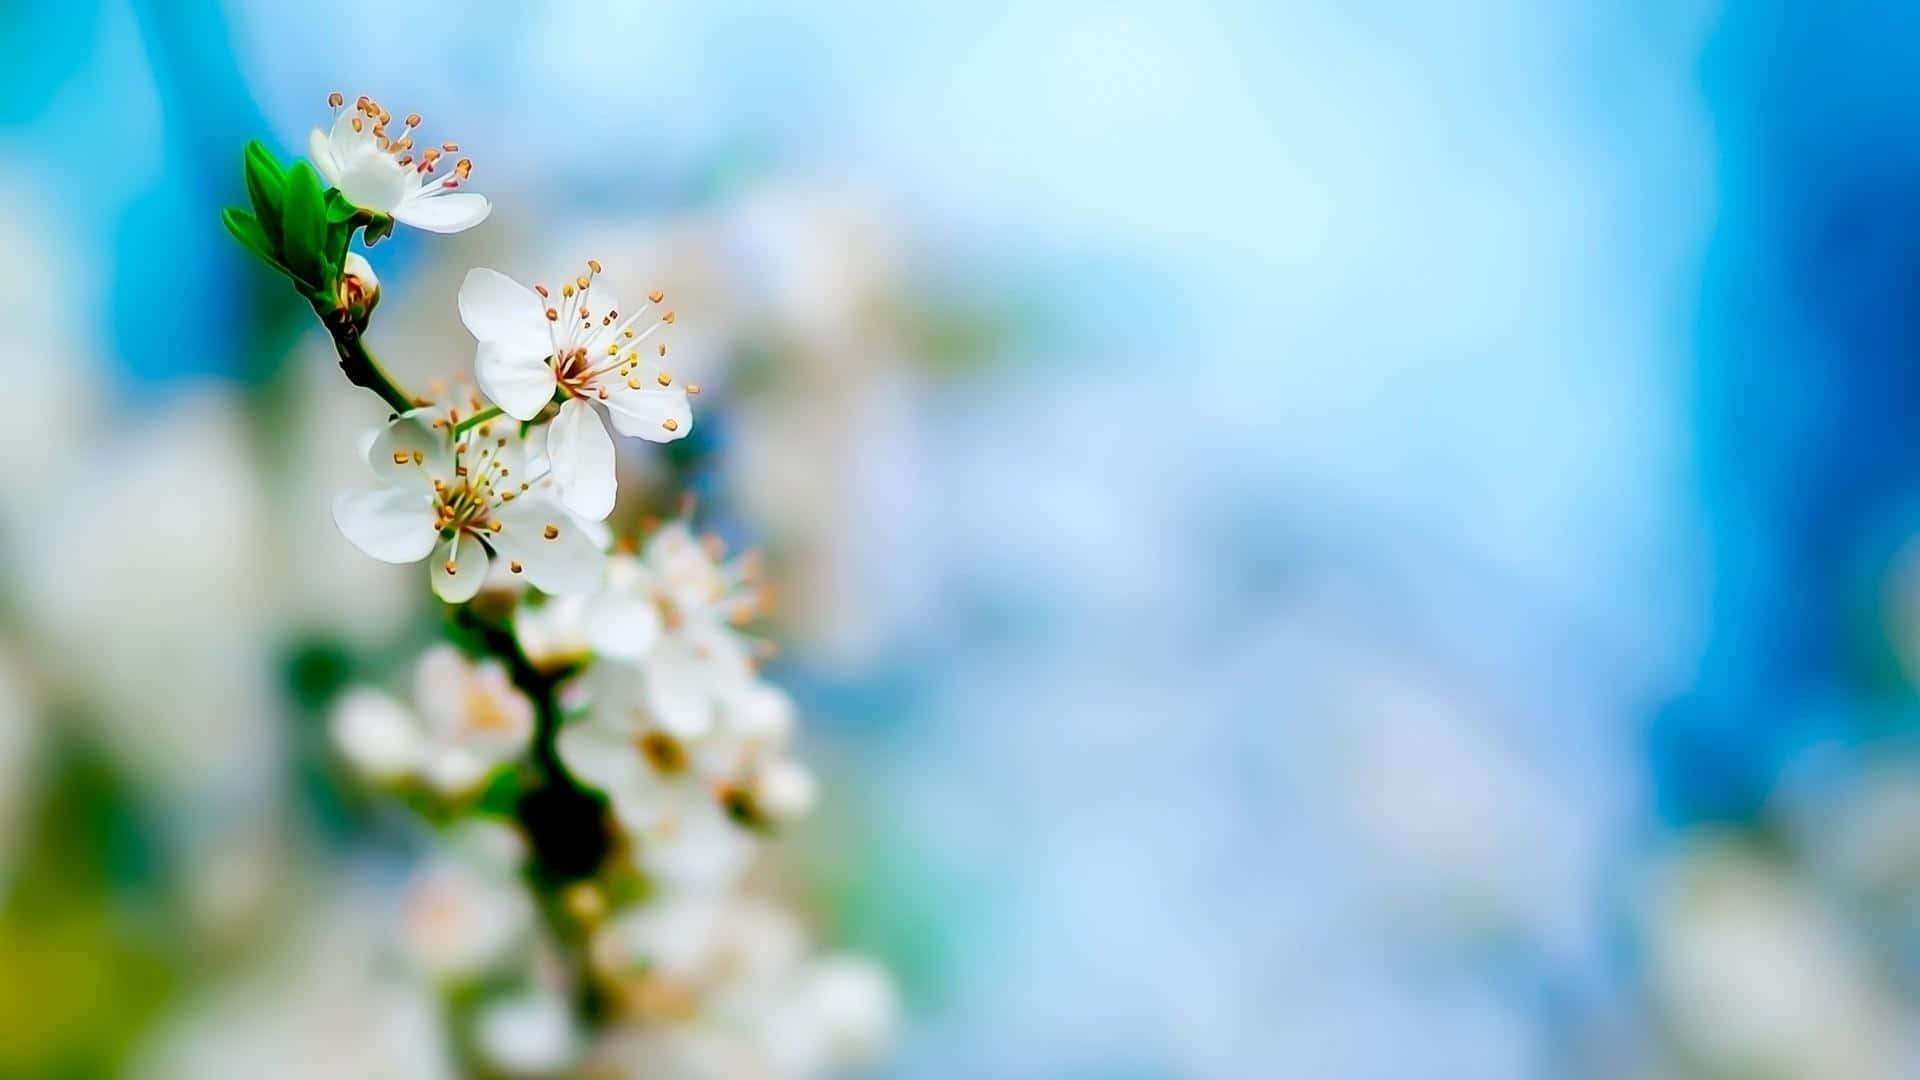 Impresionantesflores Blancas Floreciendo En Un Jardín.